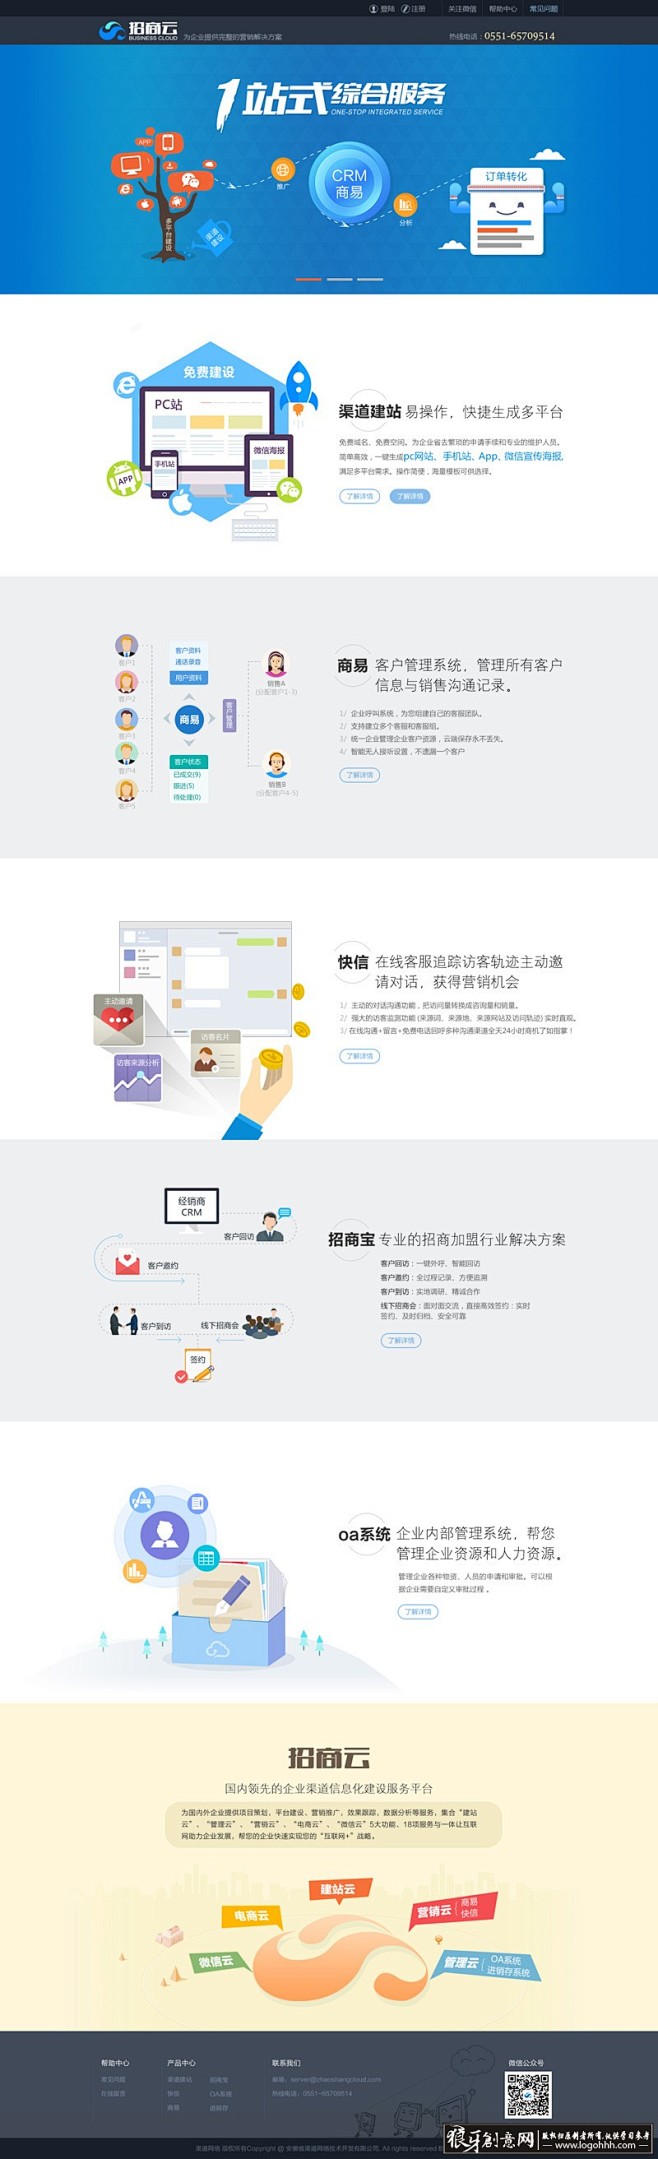 网页/UI 蓝色网站设计模板PSD 企业...